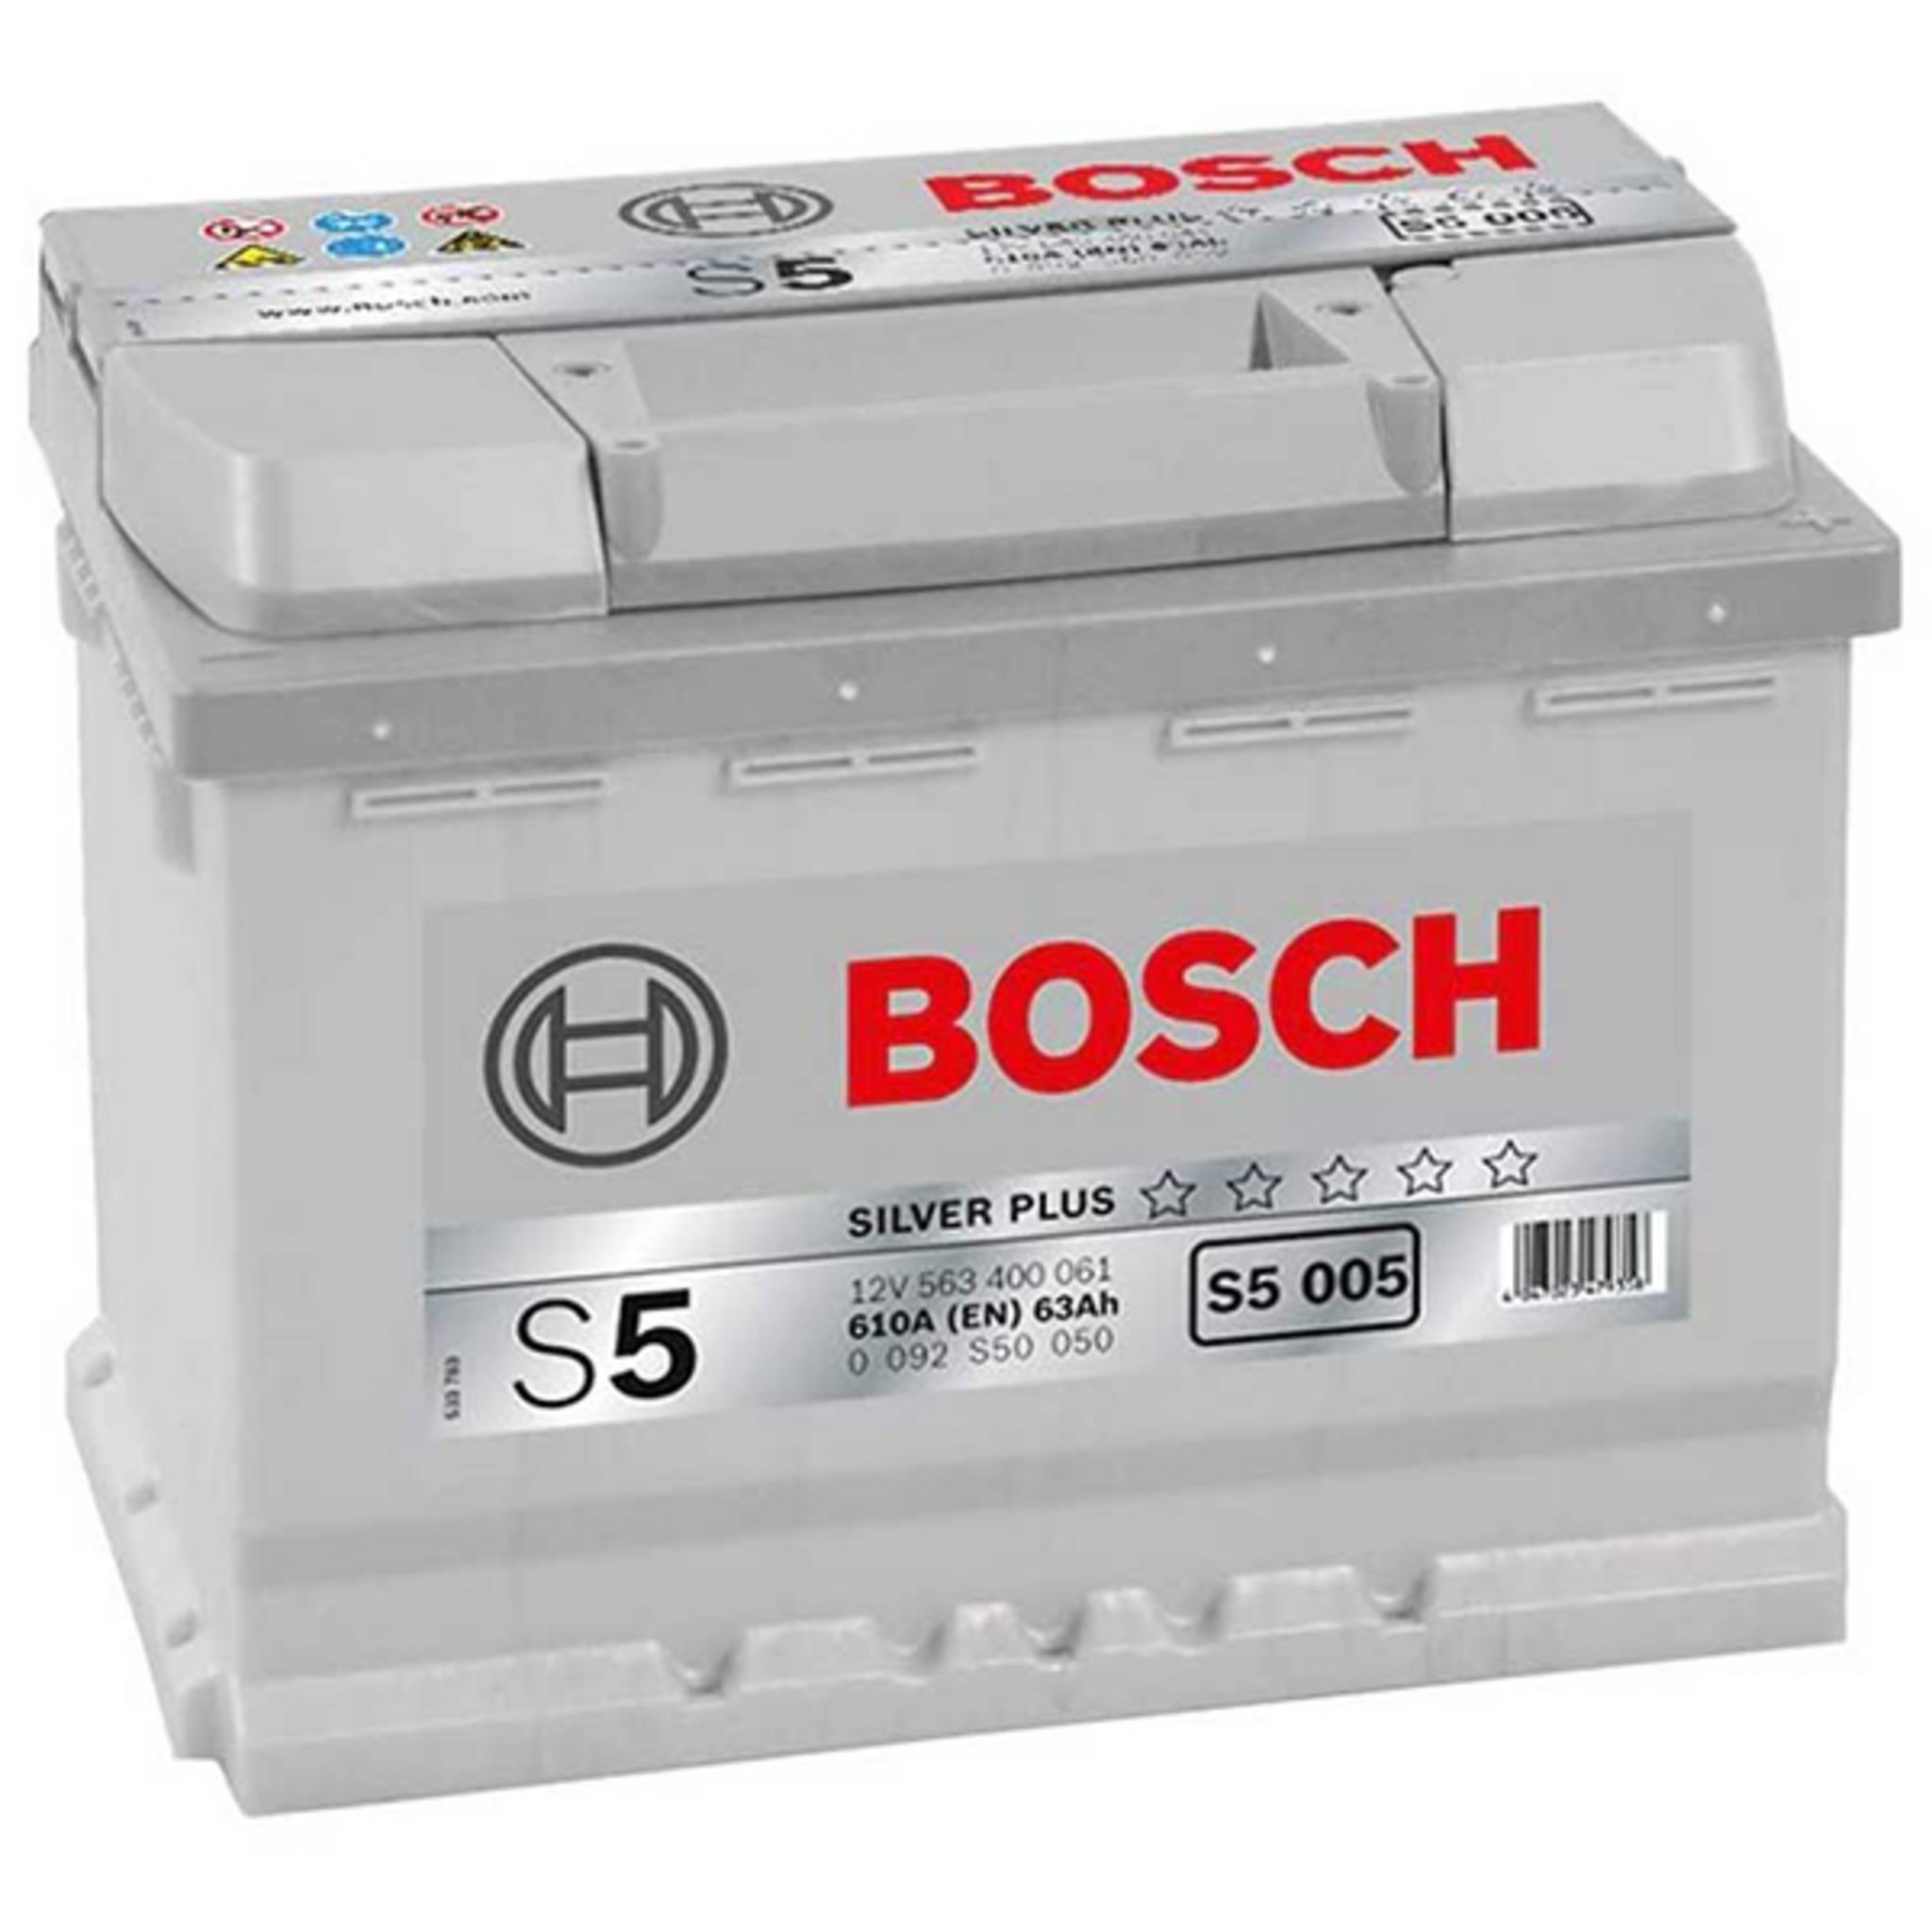  Bosch S5005 - Batterie Auto - 63A/h - 610A